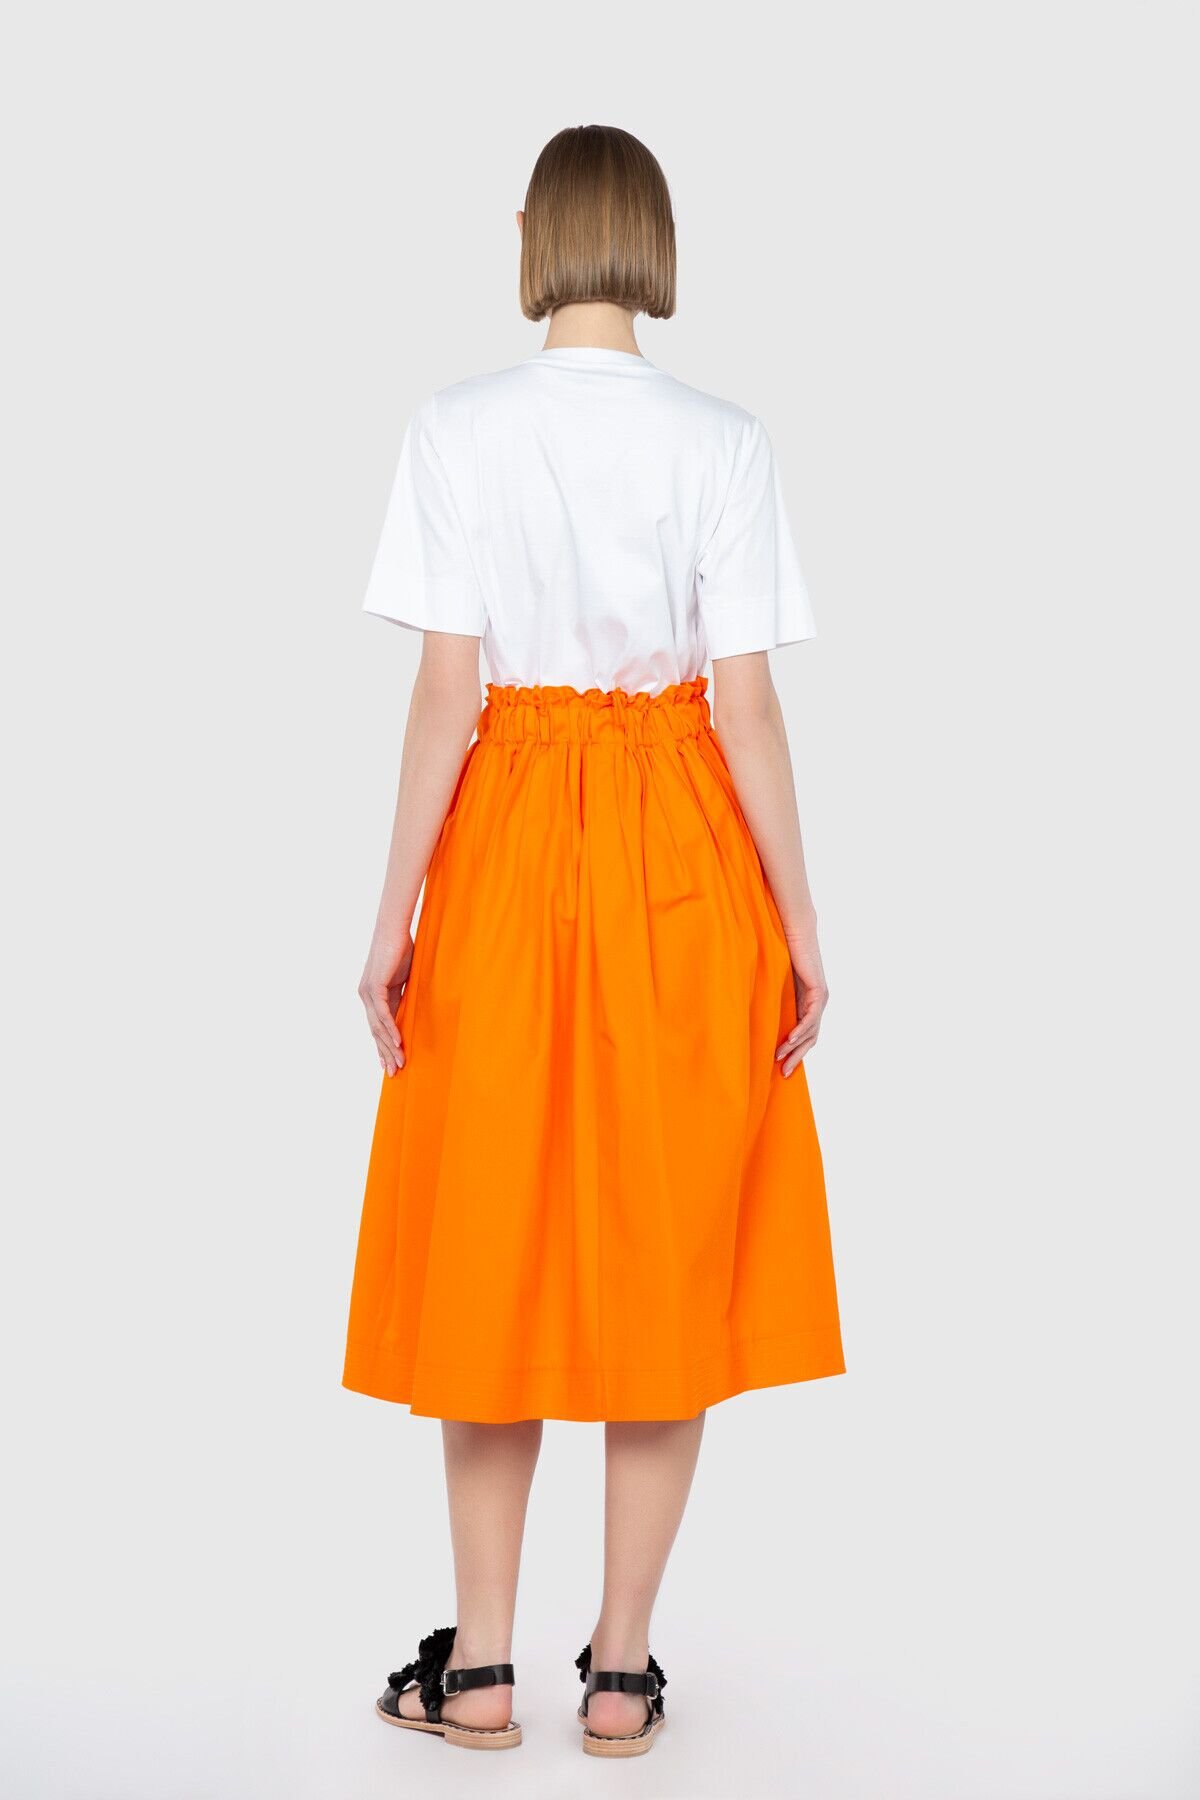 Ruffle Detailed Knee Length Voluminous Orange Skirt